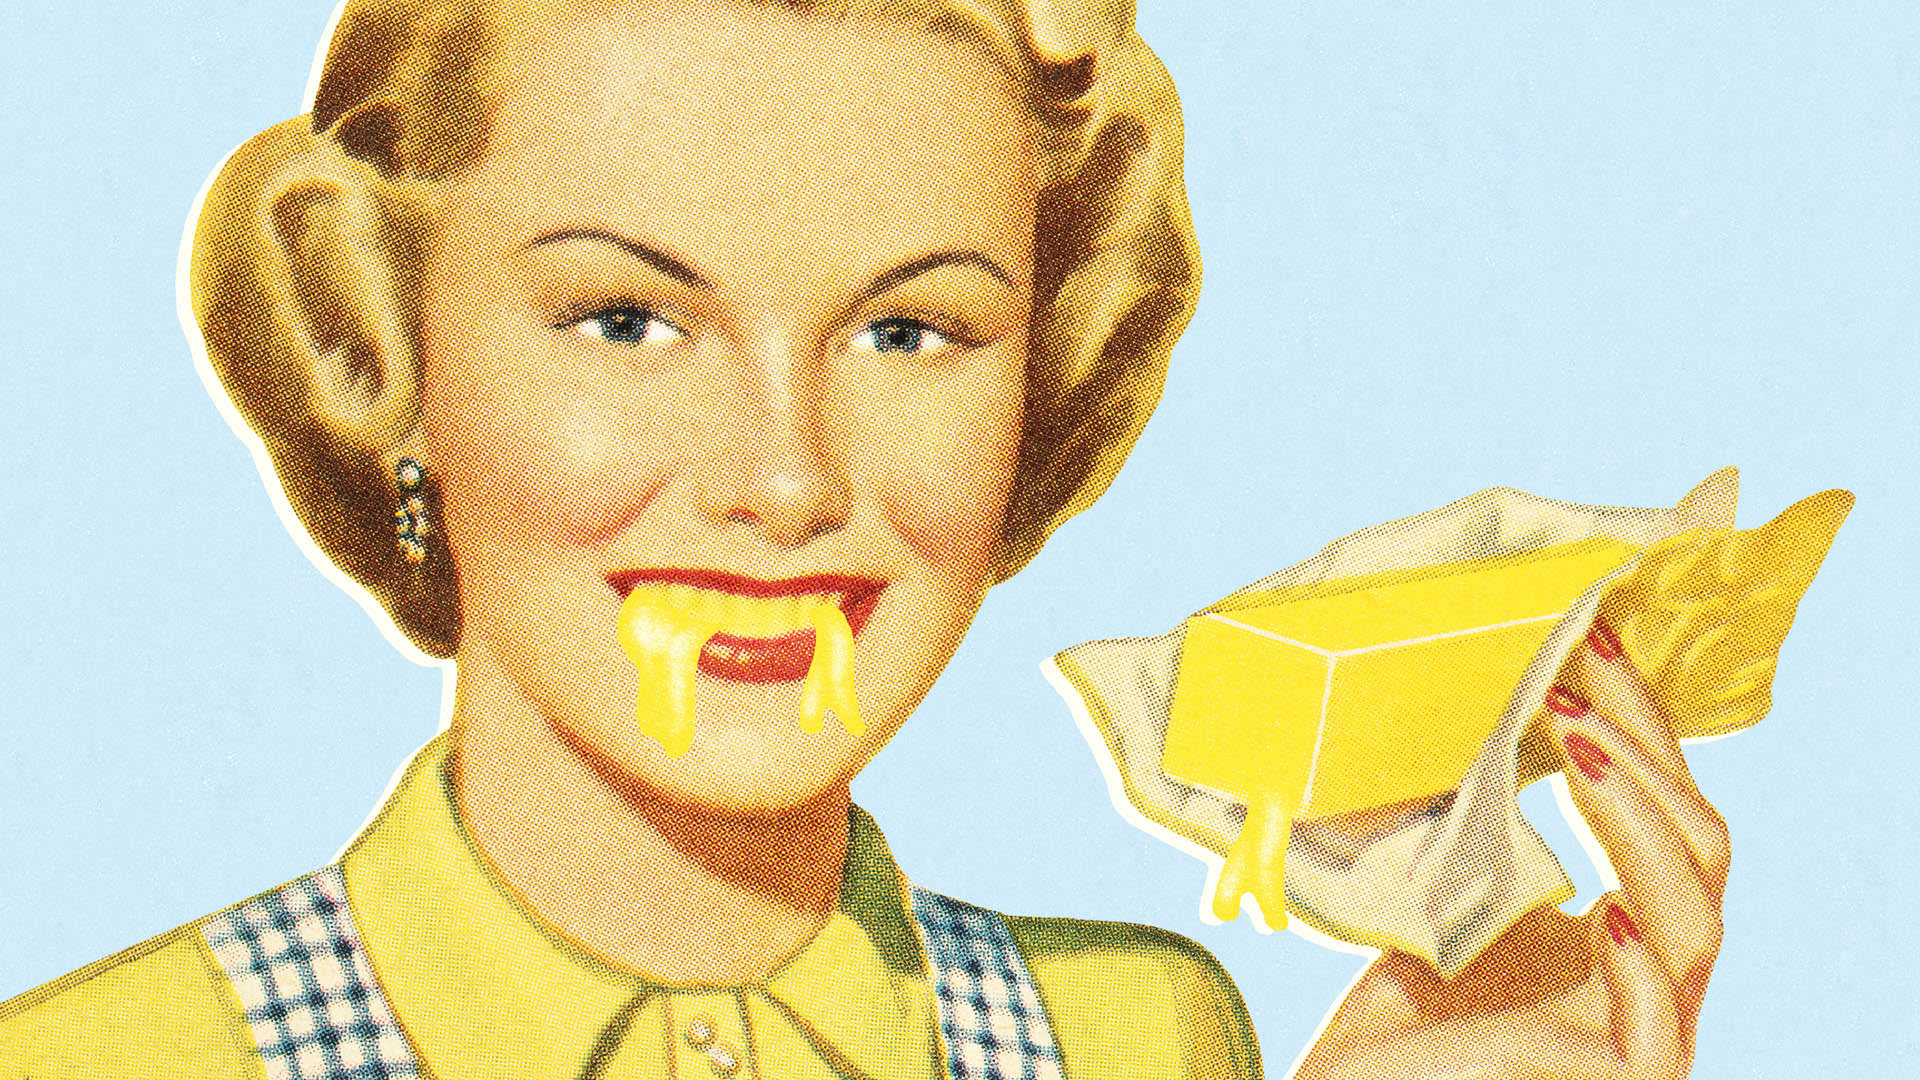 Máslo mělo v minulosti i unikátní reklamy